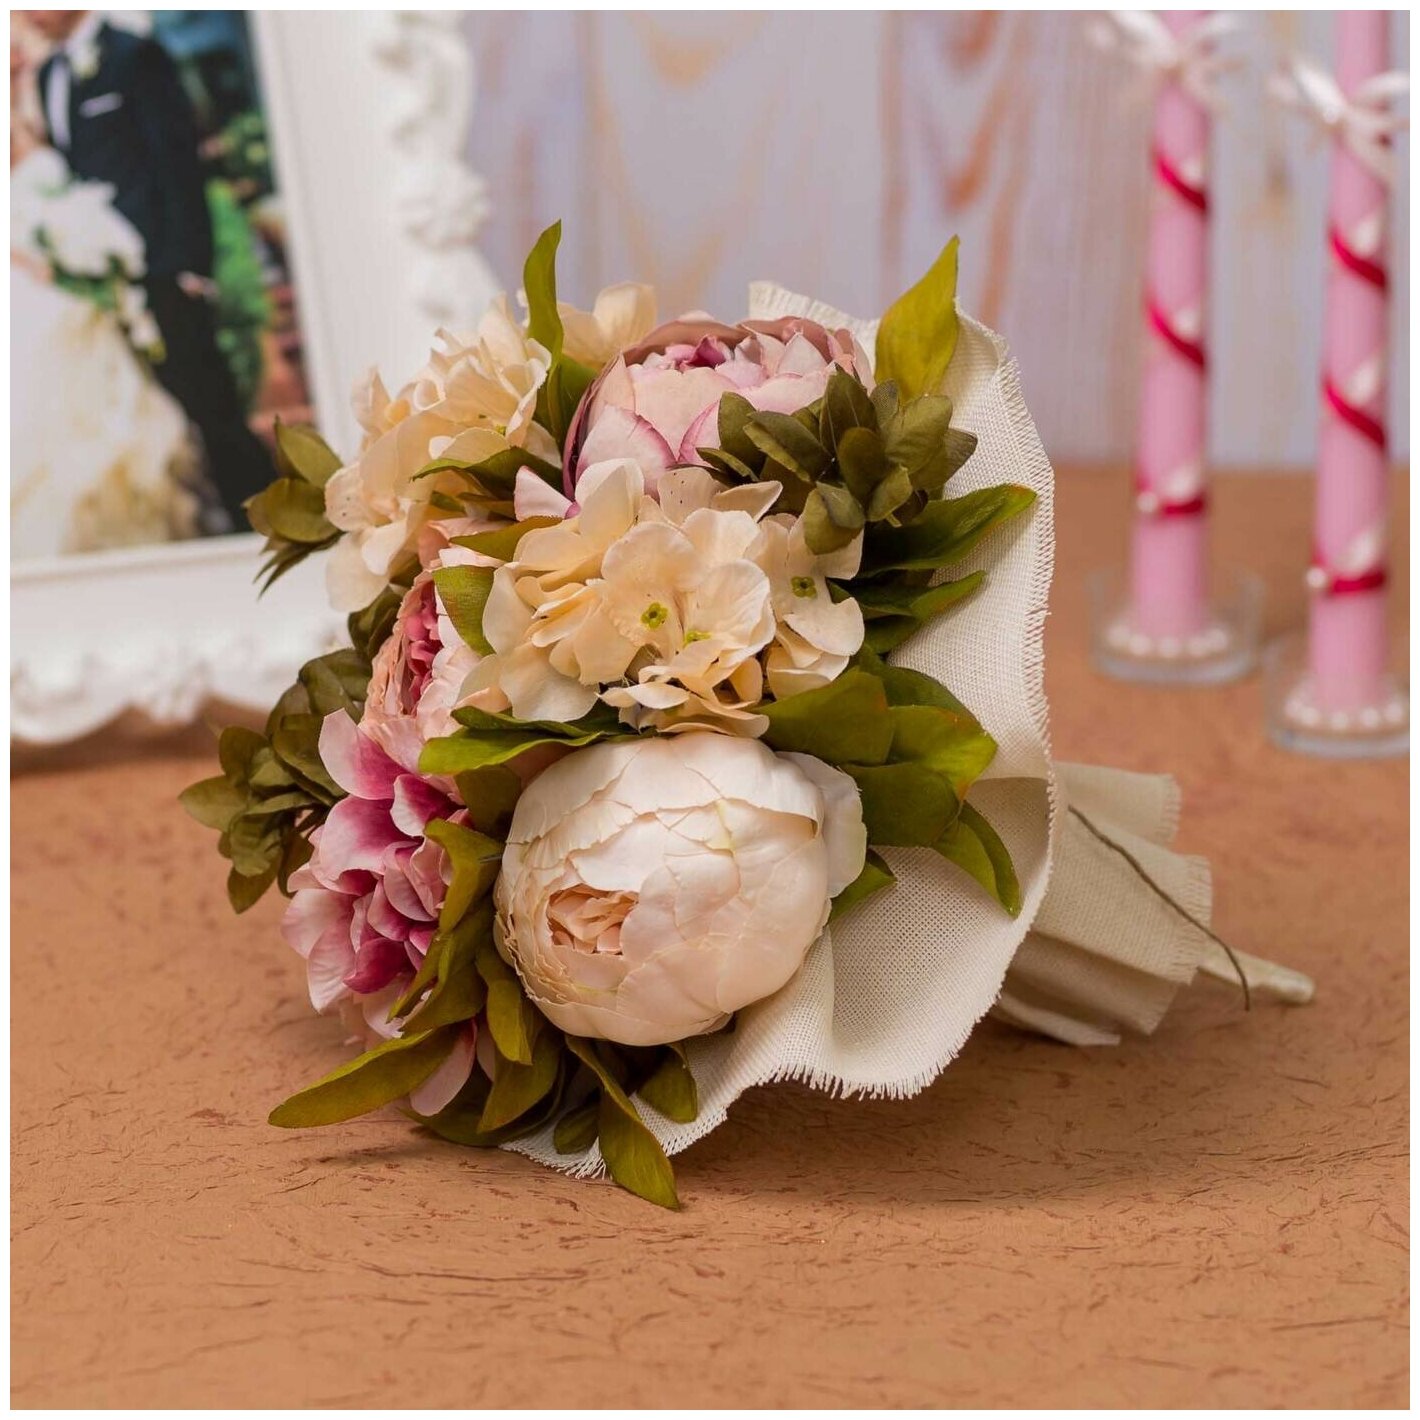 Свадебный запасной букет для новобрачной и подружек невесты "Нежные пионы" с текстильными бутонами в розовых и кремовых тонах с декором из мешковины и бечевки